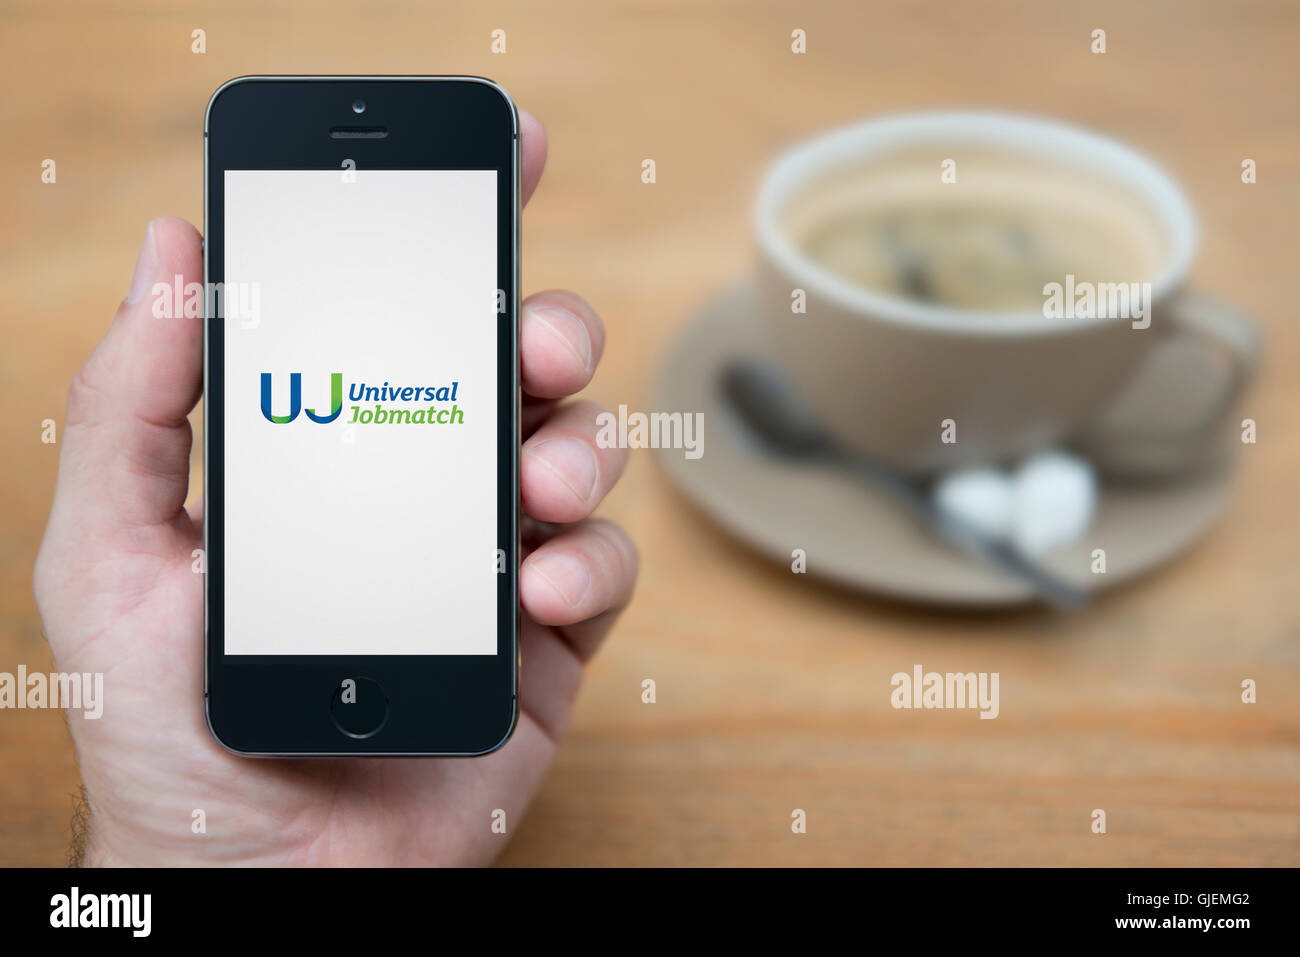 Un uomo guarda al suo iPhone che visualizza l universale Jobmatch logo, mentre sat con una tazza di caffè (solo uso editoriale). Foto Stock